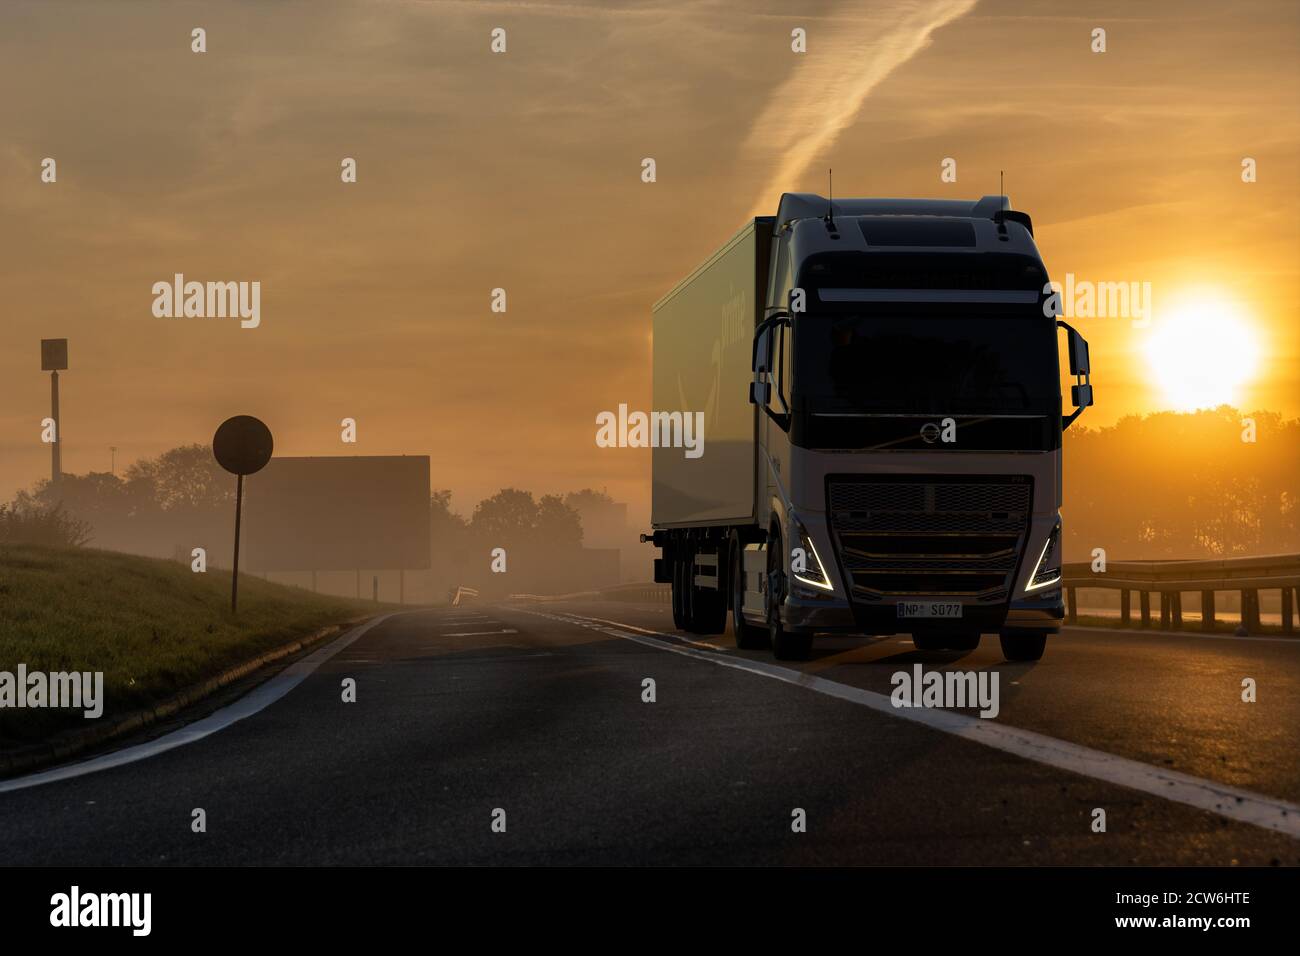 Volvo LKW mit Amazon Prime Logo Anhänger auf der Autobahn Am Morgen  Stockfotografie - Alamy